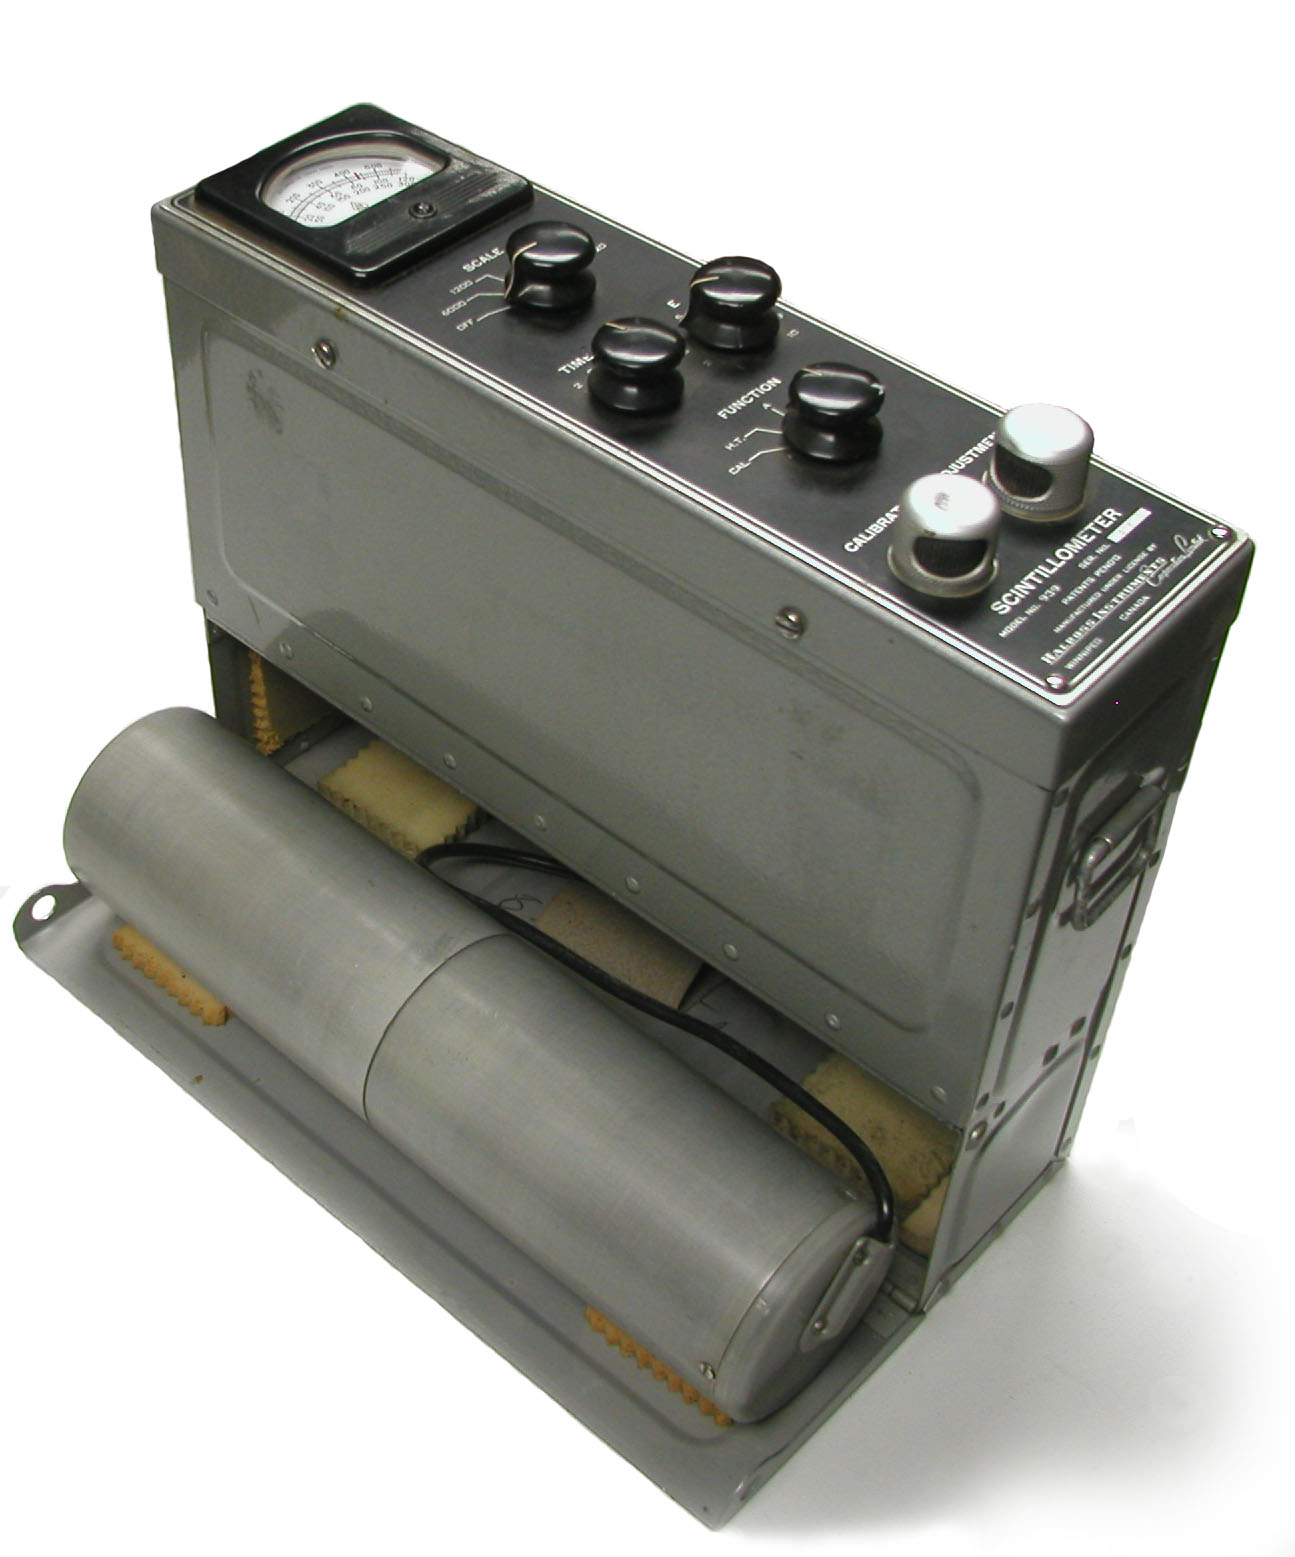 Halross Model 939 Scintillometer (ca. 1953-1954)